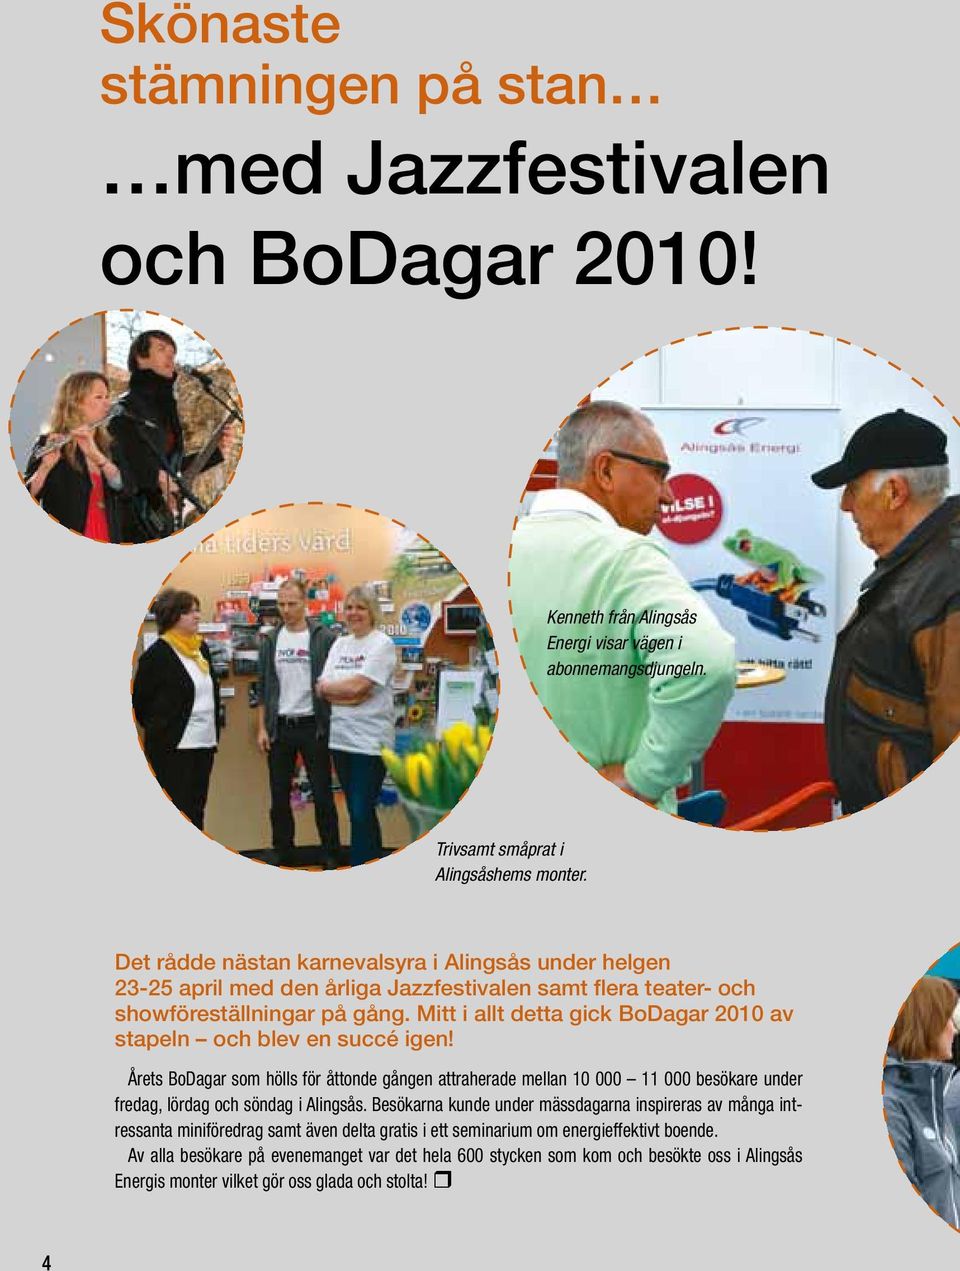 Mitt i allt detta gick BoDagar 2010 av stapeln och blev en succé igen! Årets BoDagar som hölls för åttonde gången attraherade mellan 10 000 11 000 besökare under fredag, lördag och söndag i Alingsås.